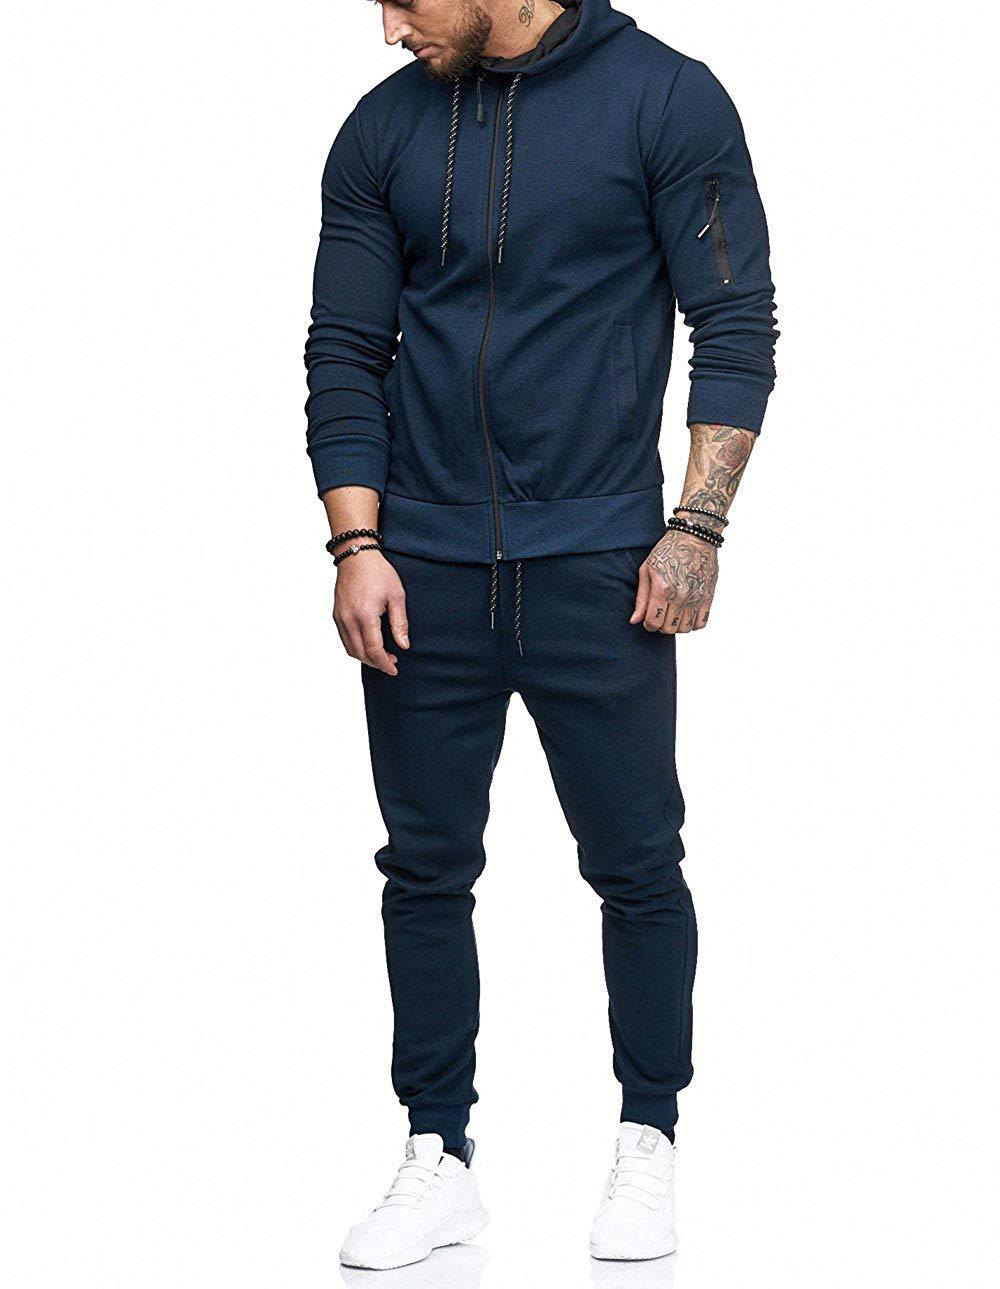 Men's sports suit fitness casual wear - ROMART GLOBAL LTD